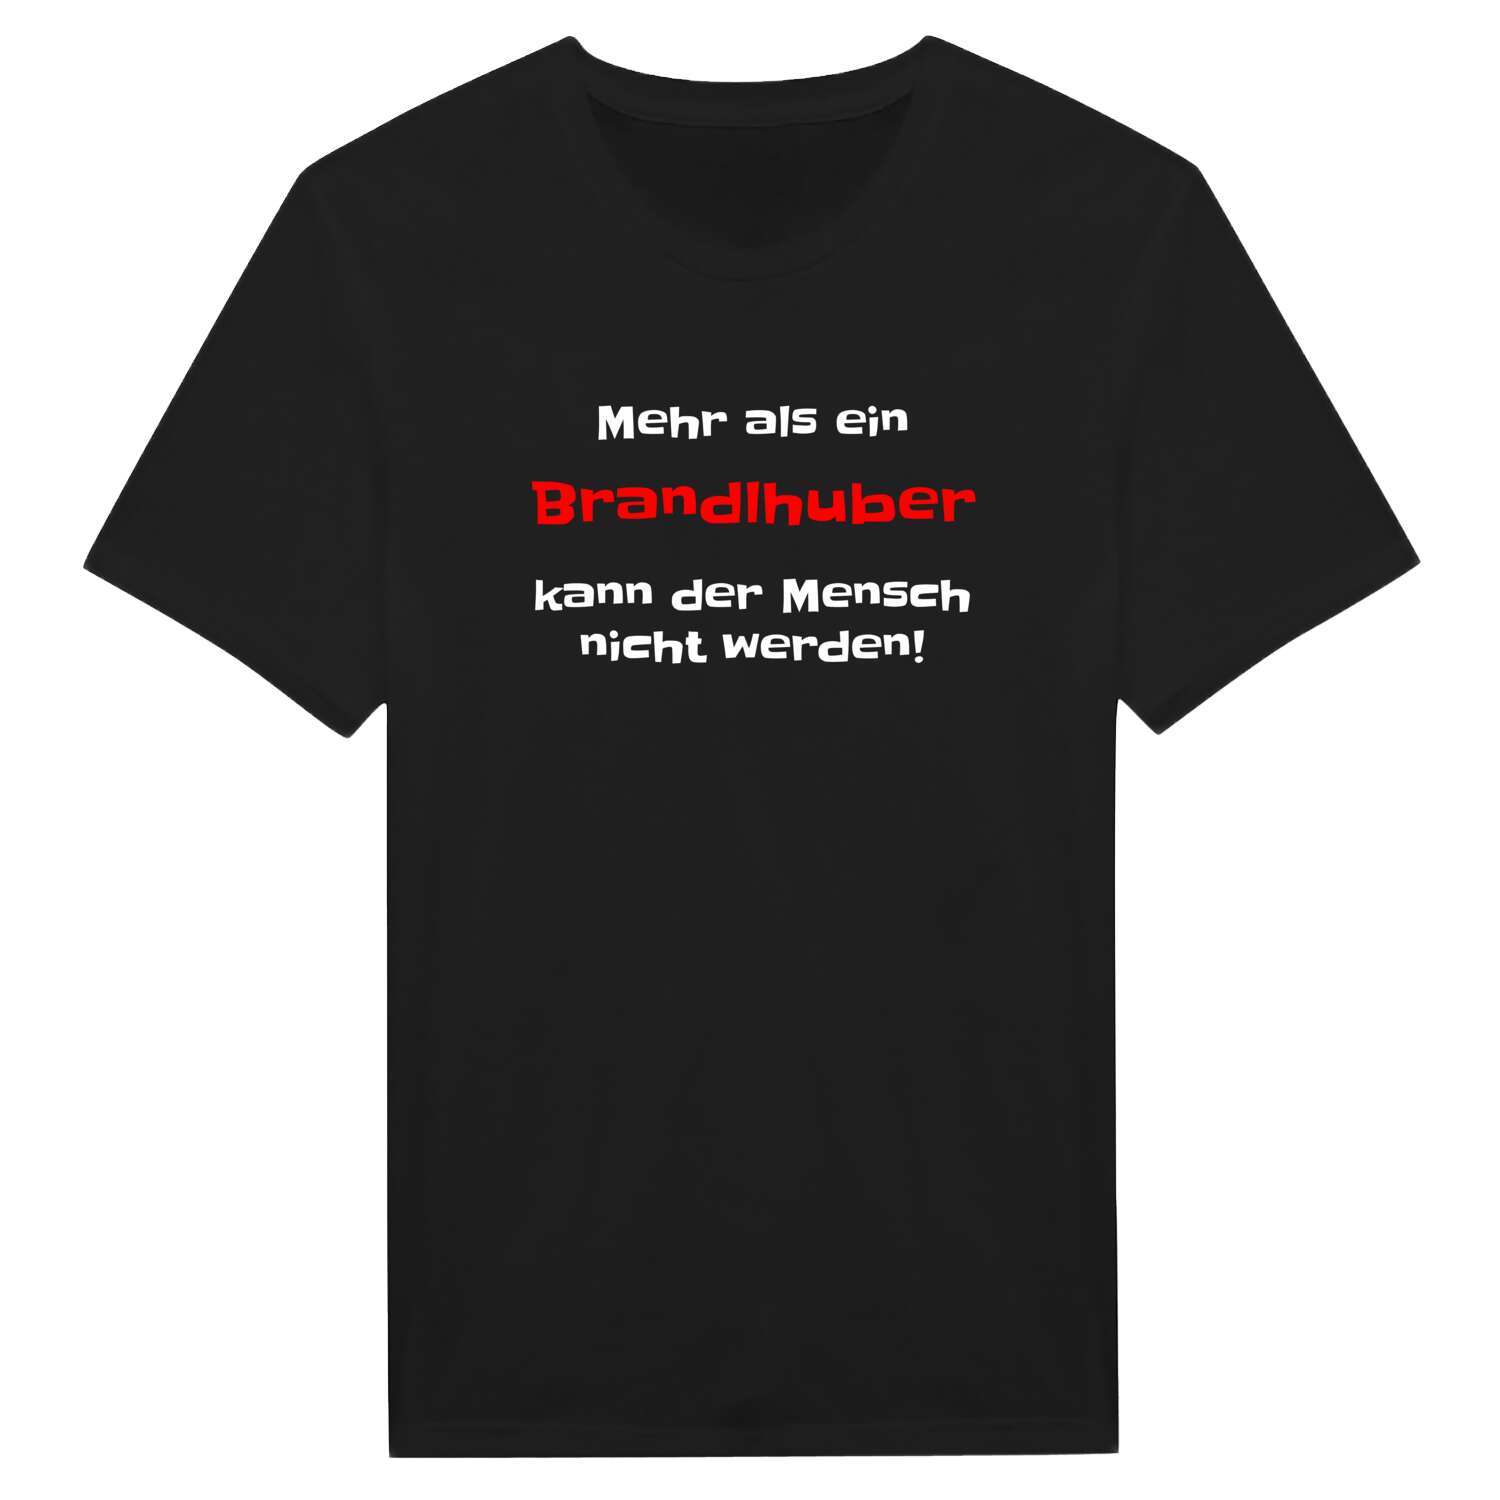 Brandlhub T-Shirt »Mehr als ein«